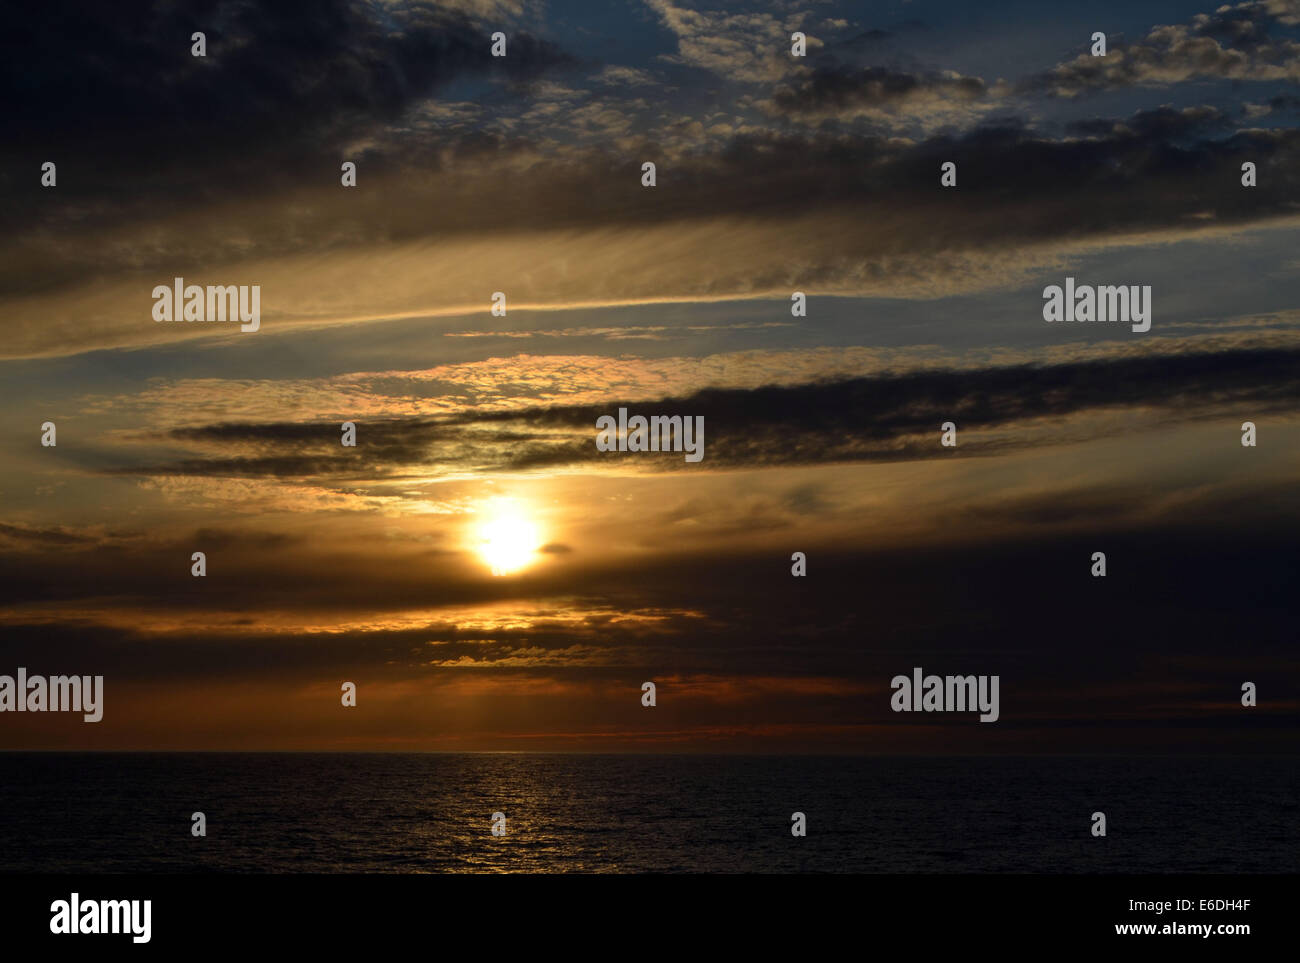 La terra del sole di mezzanotte a nord del Circolo Polare Artico dove in estate il sole non tramonta mai, remaning sopra l'orizzonte 24ore Foto Stock